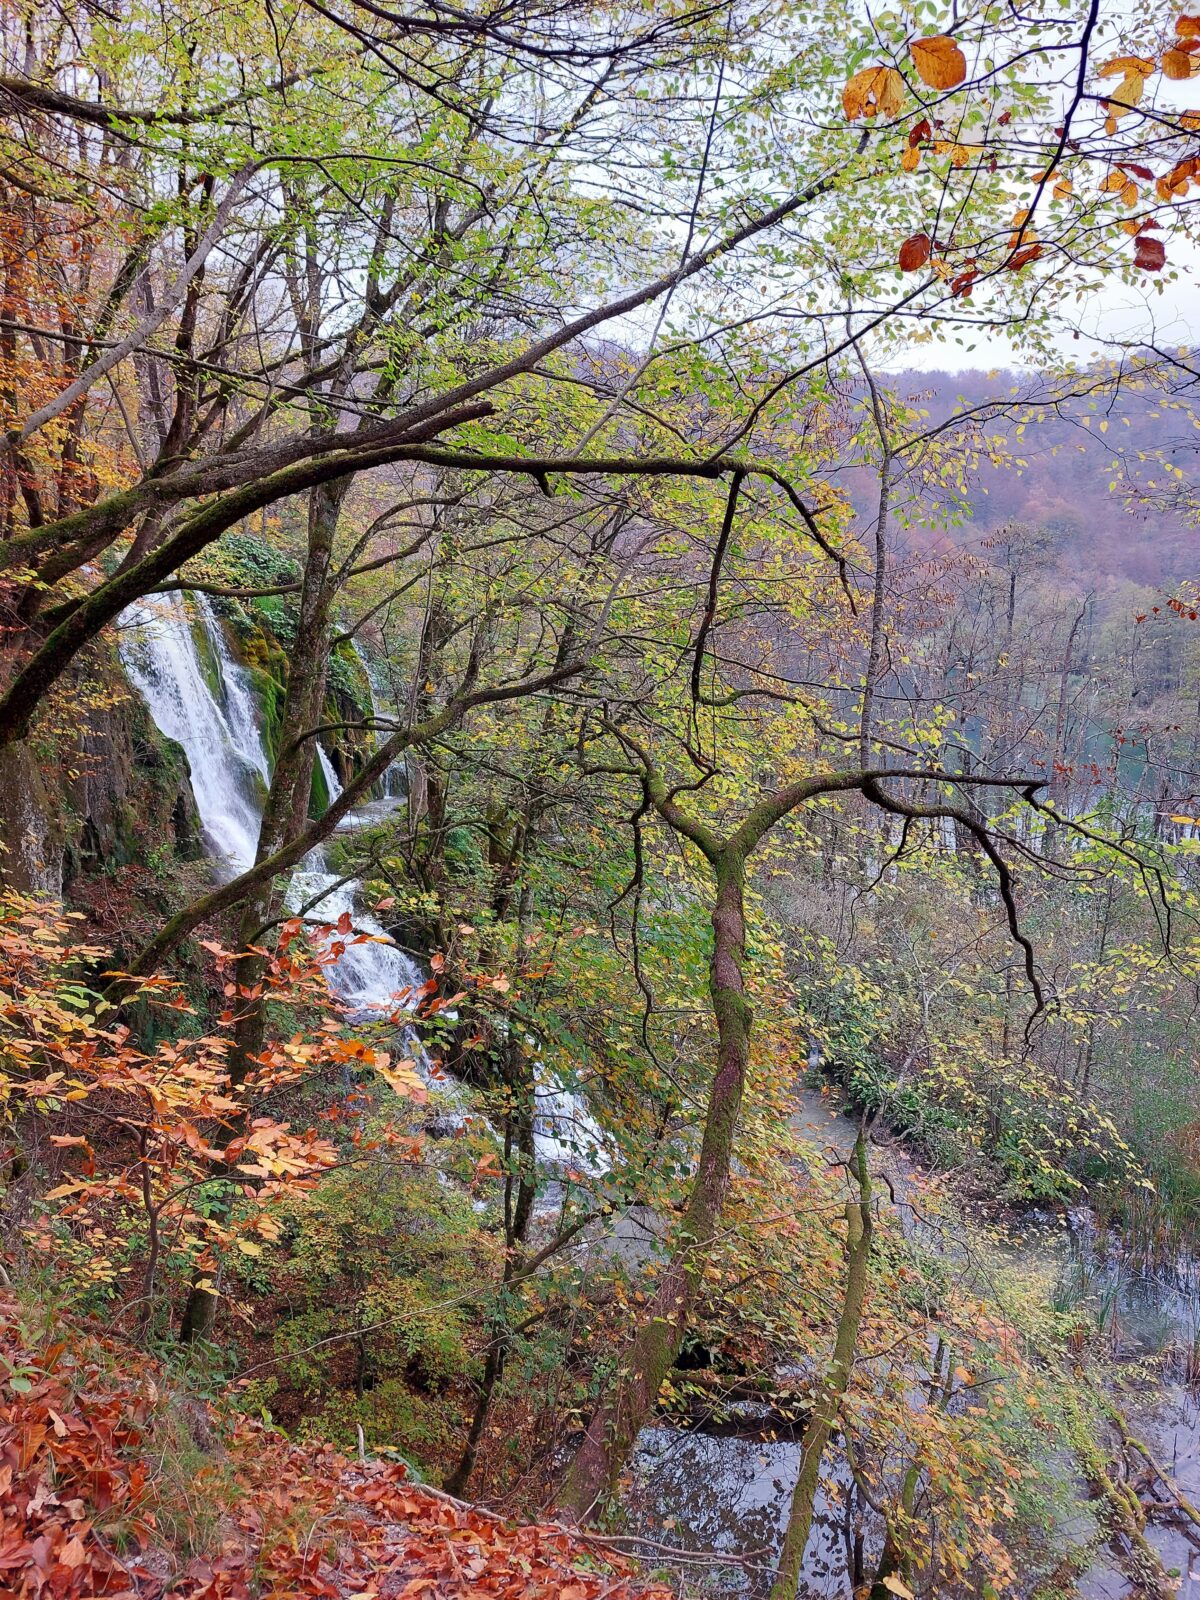 Visiter le parc Plitvice, un oasis à la végétation luxuriante